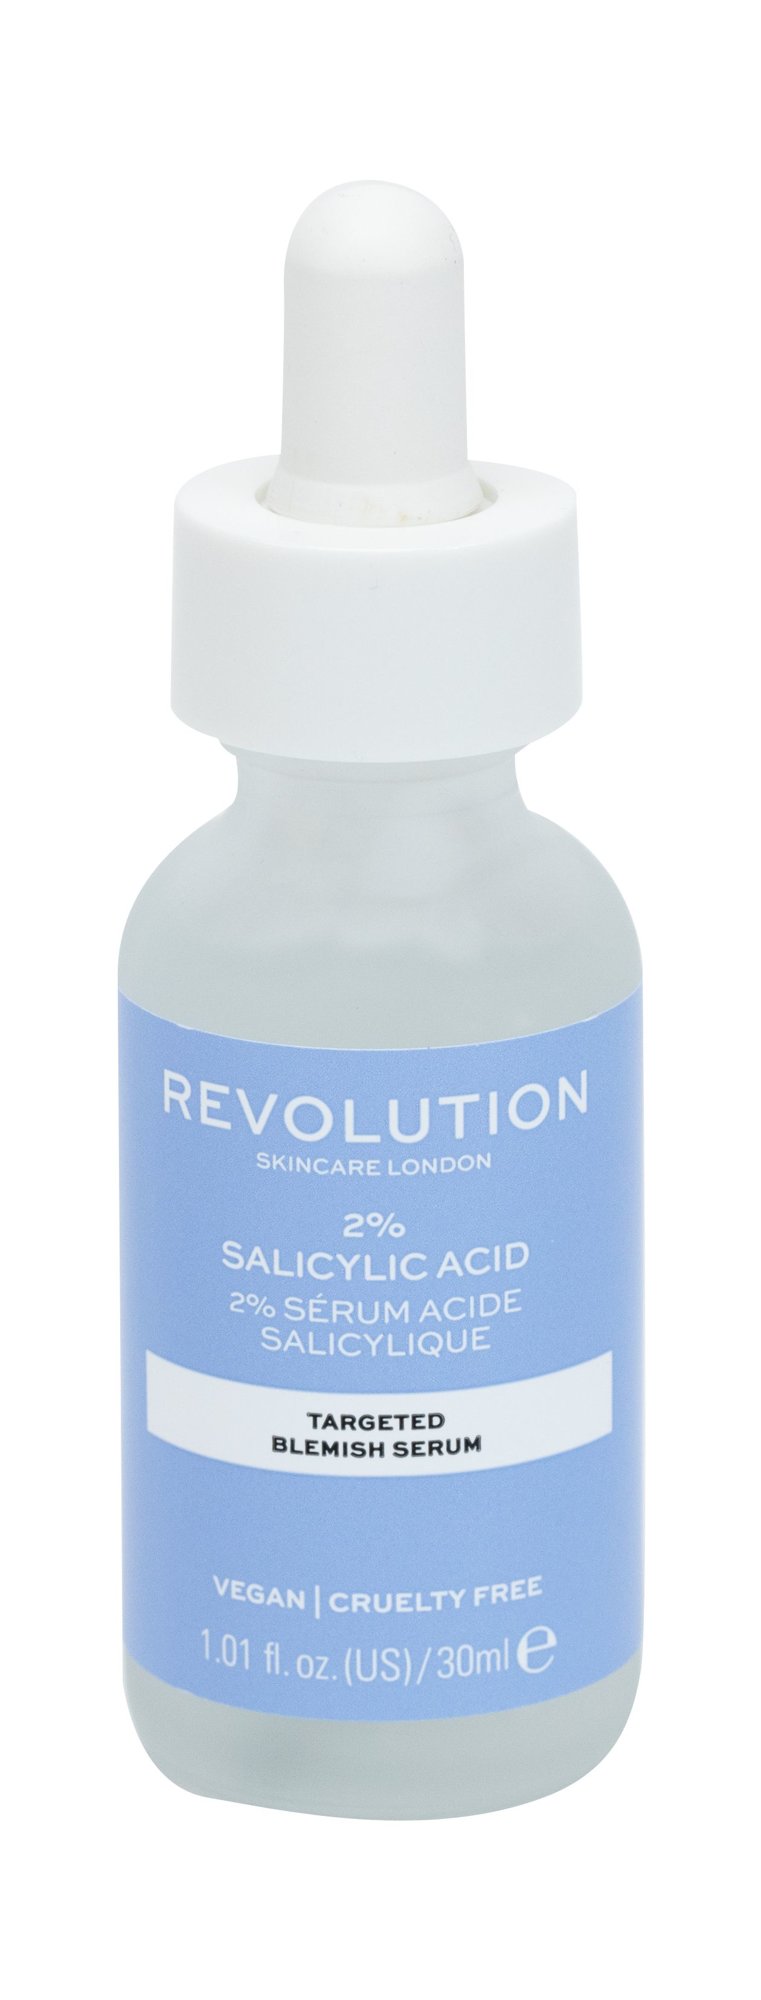 Makeup Revolution London Skincare 2% Salicylic Acid Veido serumas